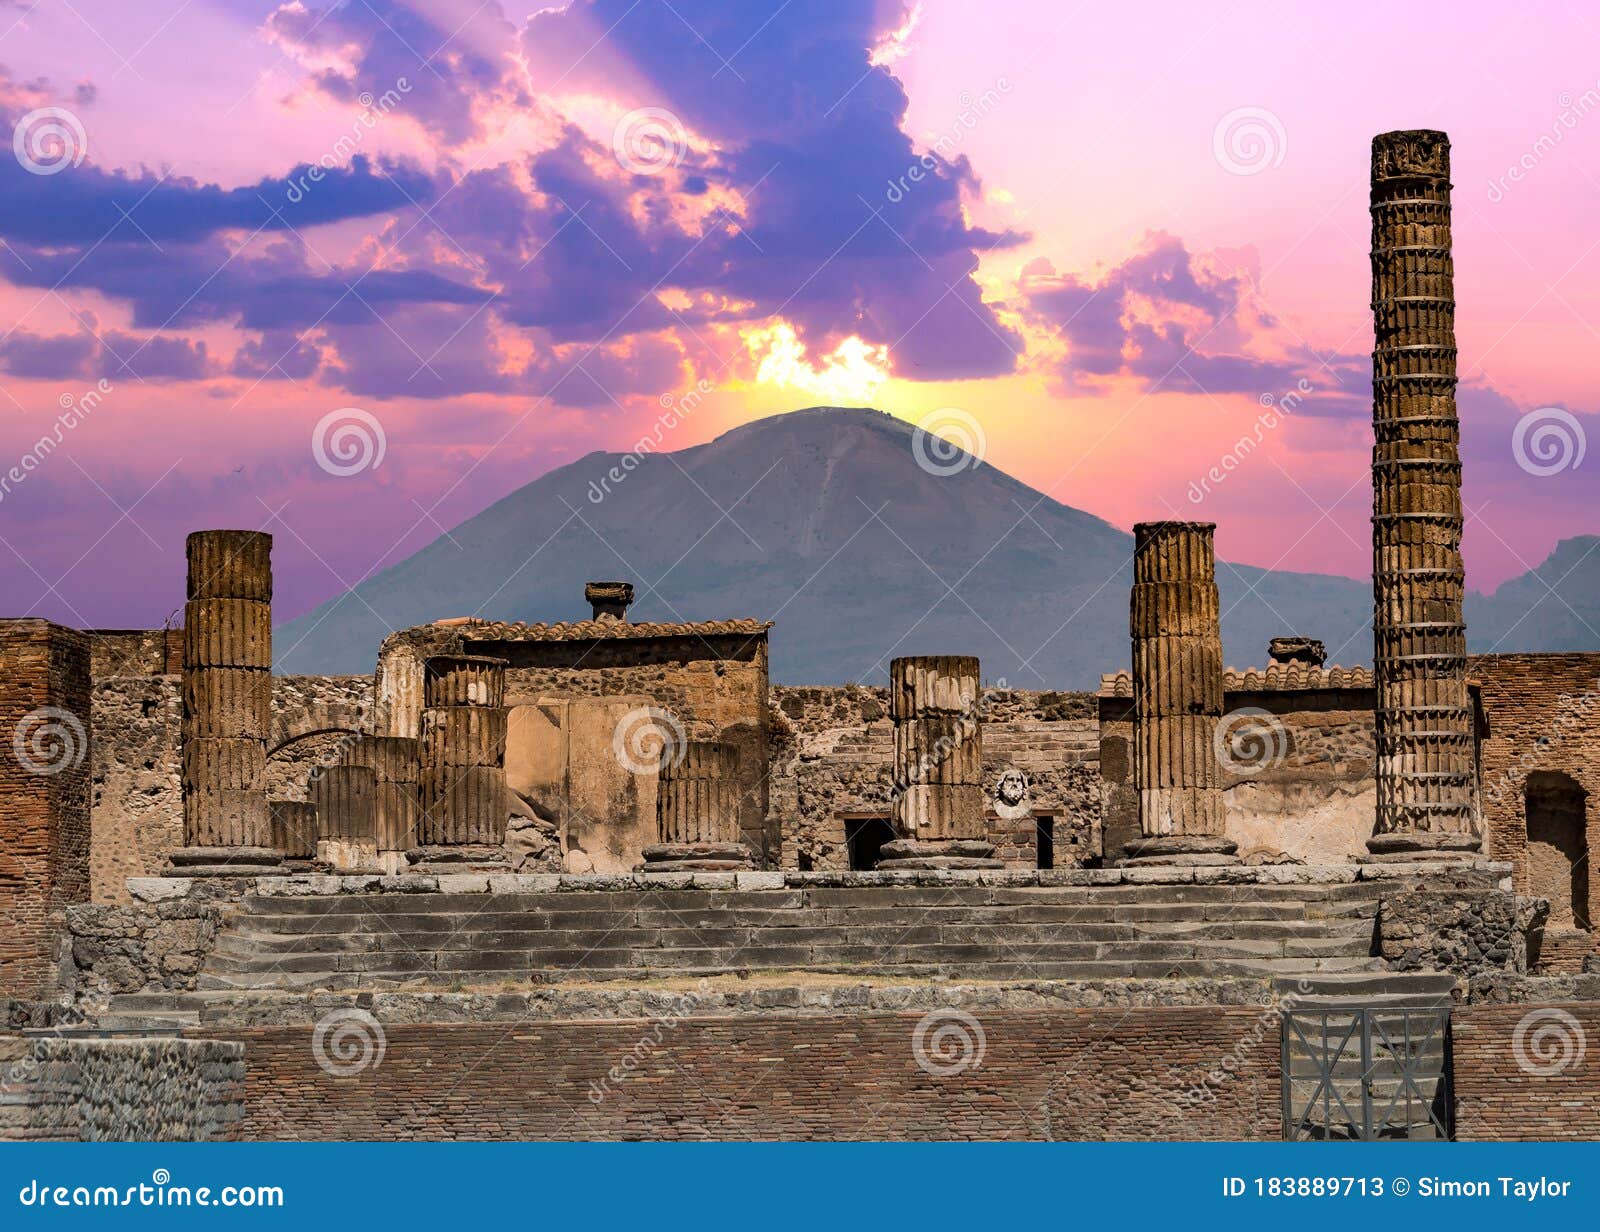 pompeii and mount vesuvius against a vibrant sunset